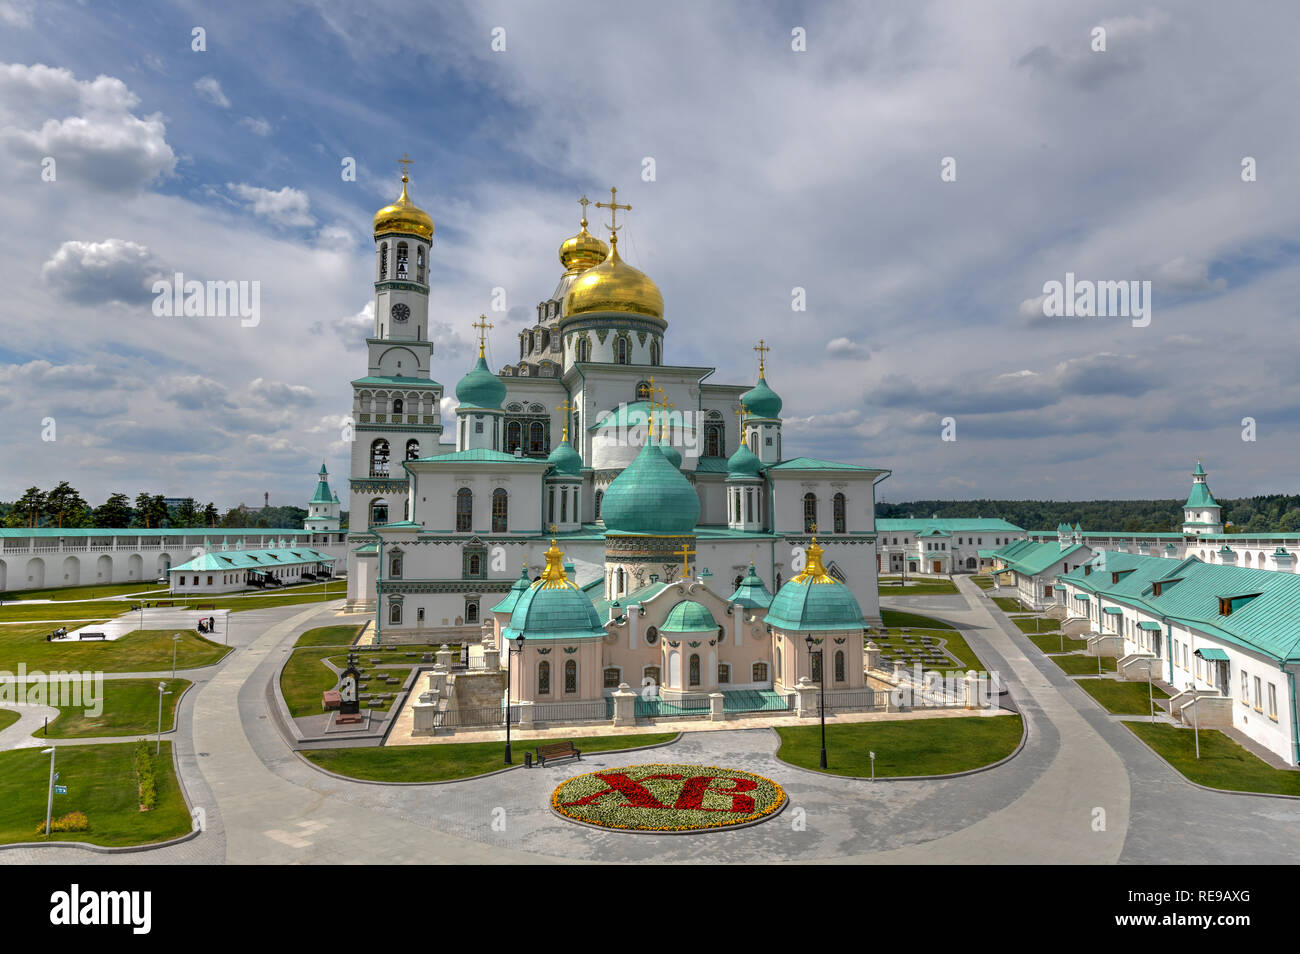 Das neue Jerusalem Kloster in Istrien, Russland. Es ist ein großes Kloster der Russischen Orthodoxen Kirche in Moskau, Russland. Stockfoto